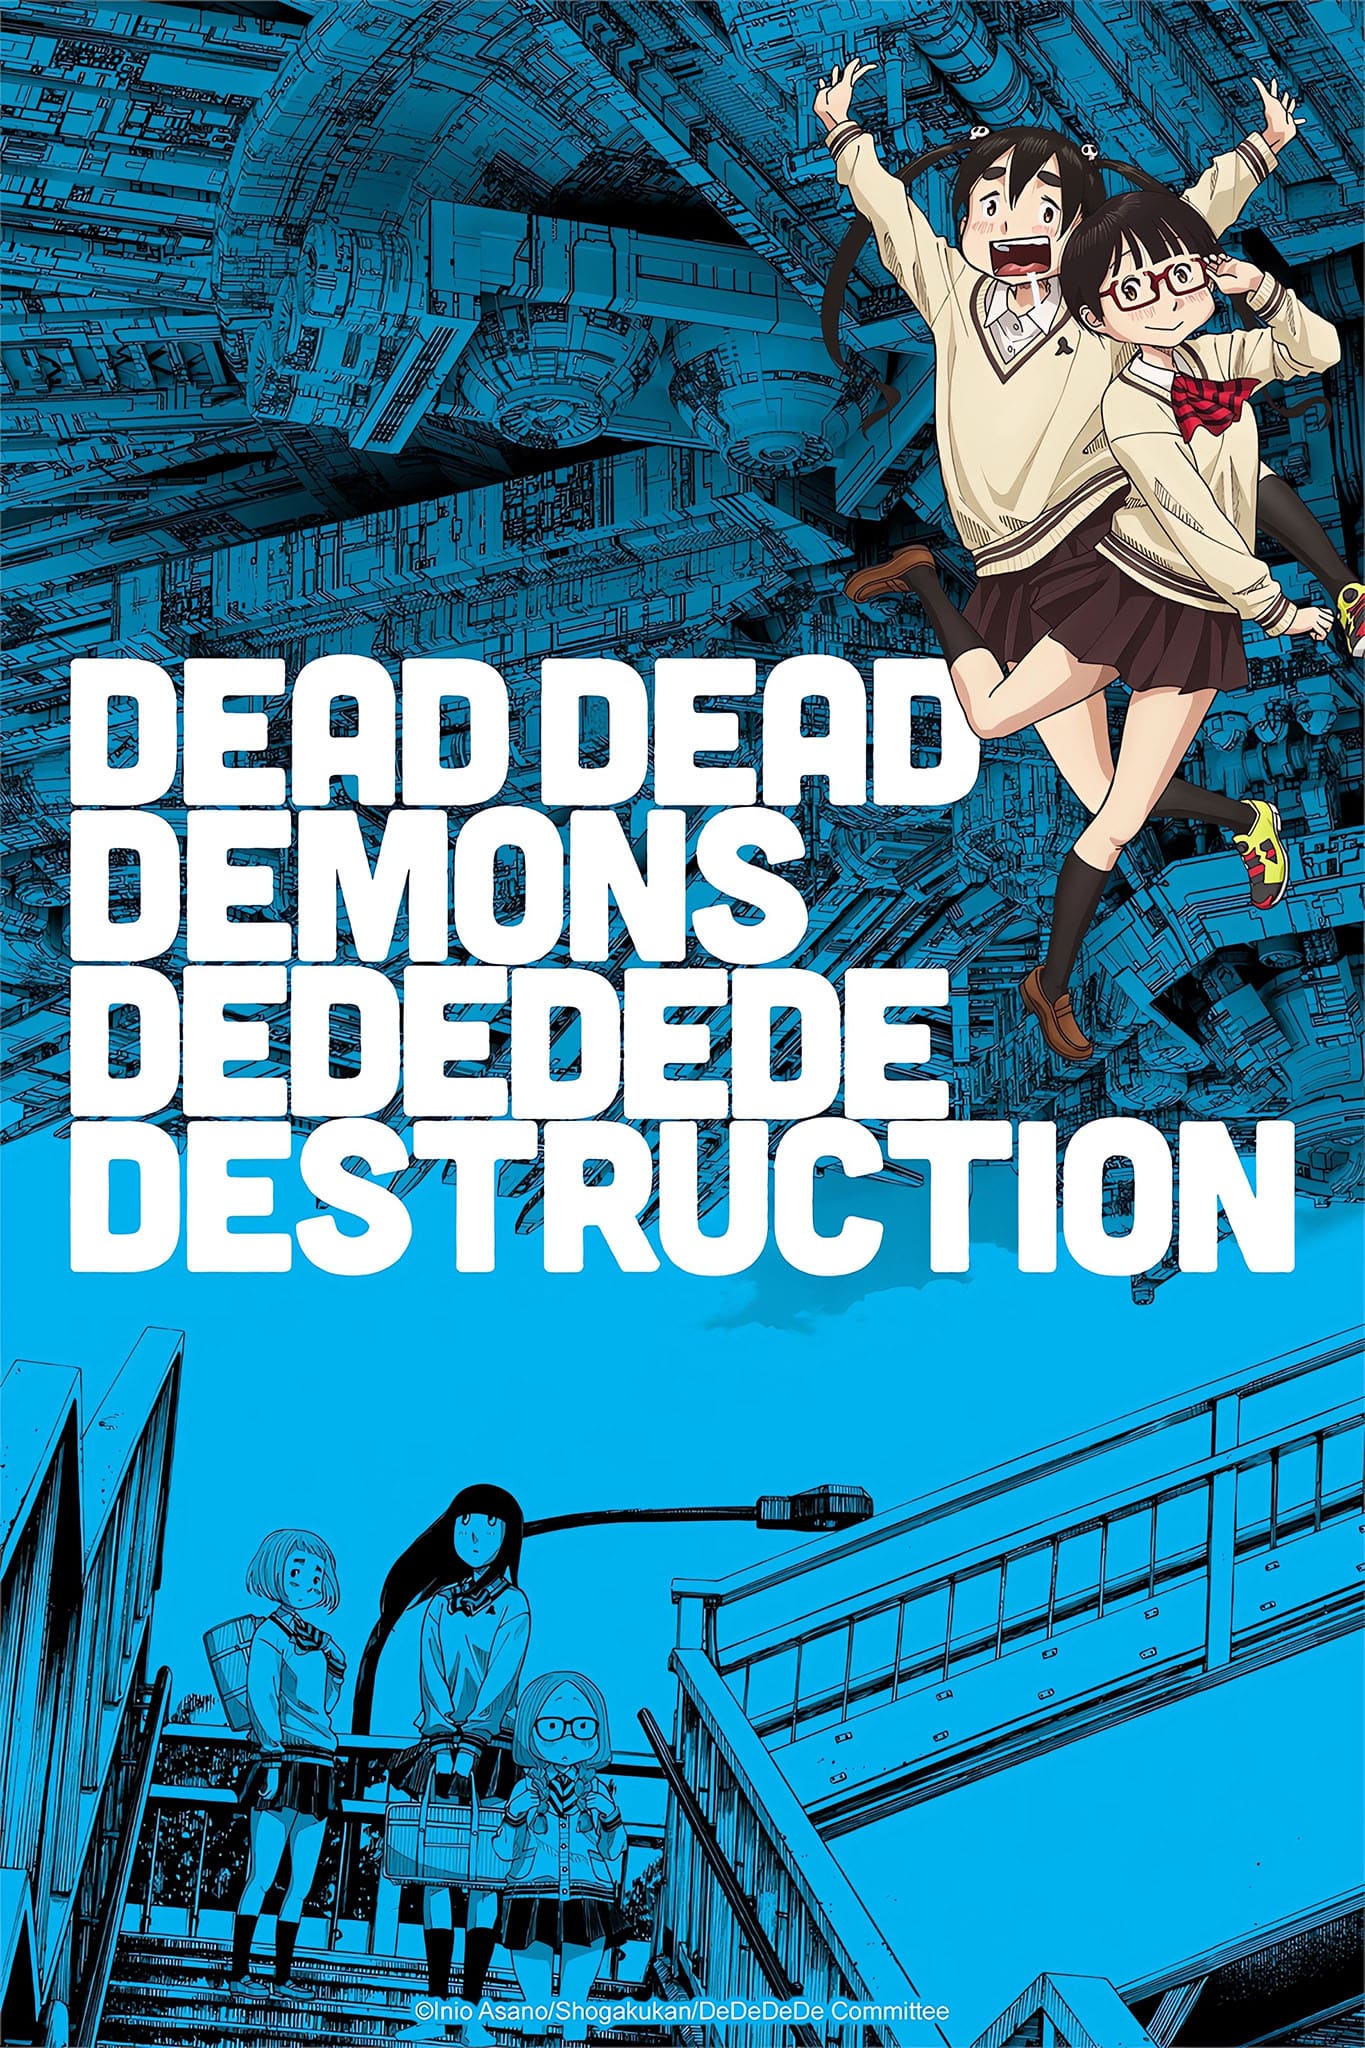 Premier visuel pour l'anime DEAD DEAD DEMON'S DEDEDEDE DESTRUCTION.